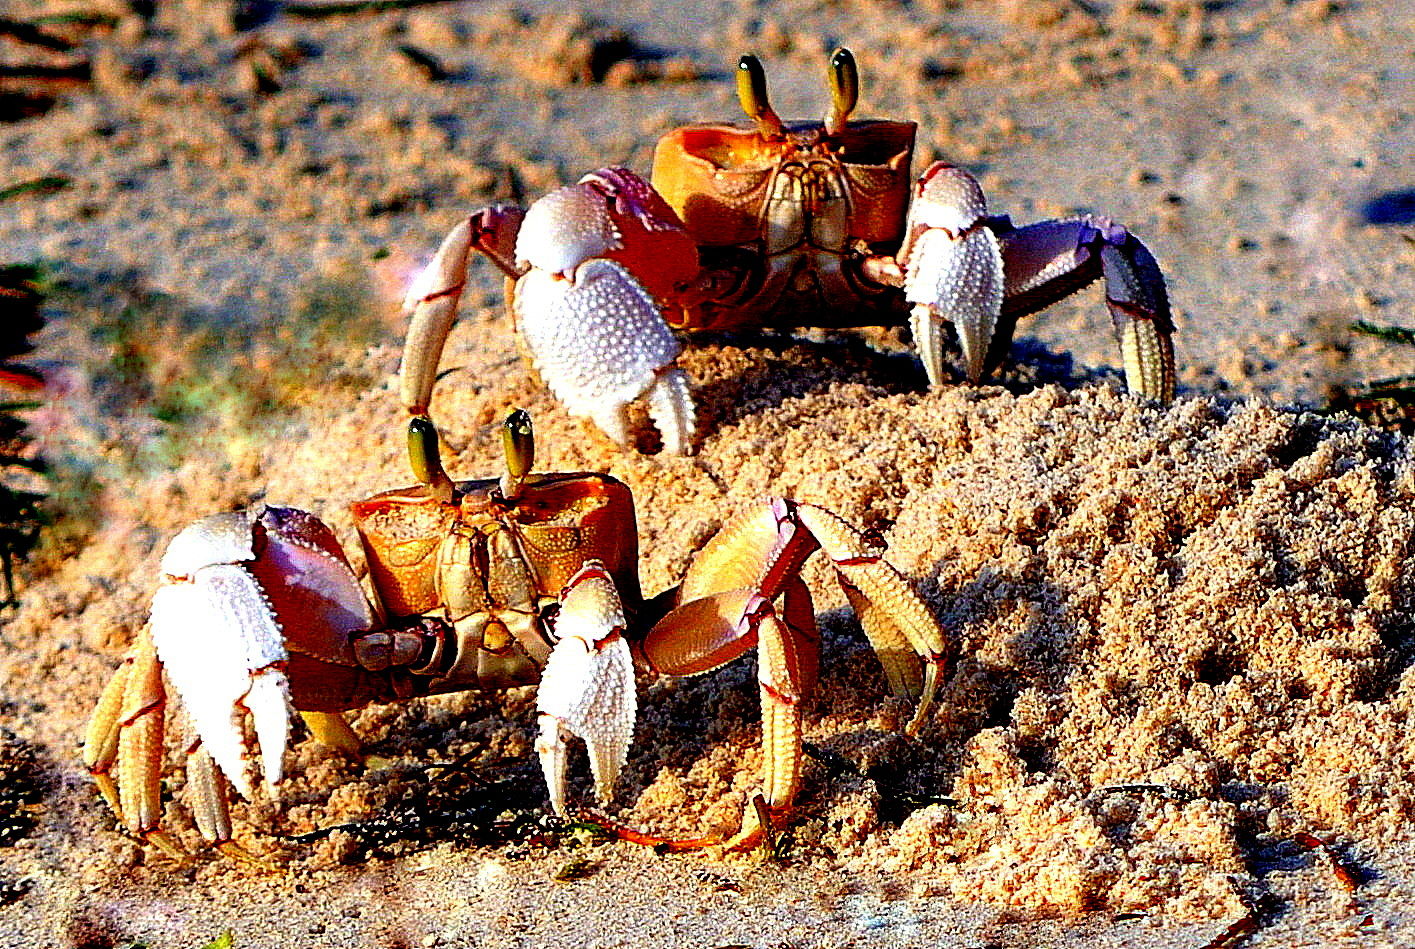 Les crabes sur la plage